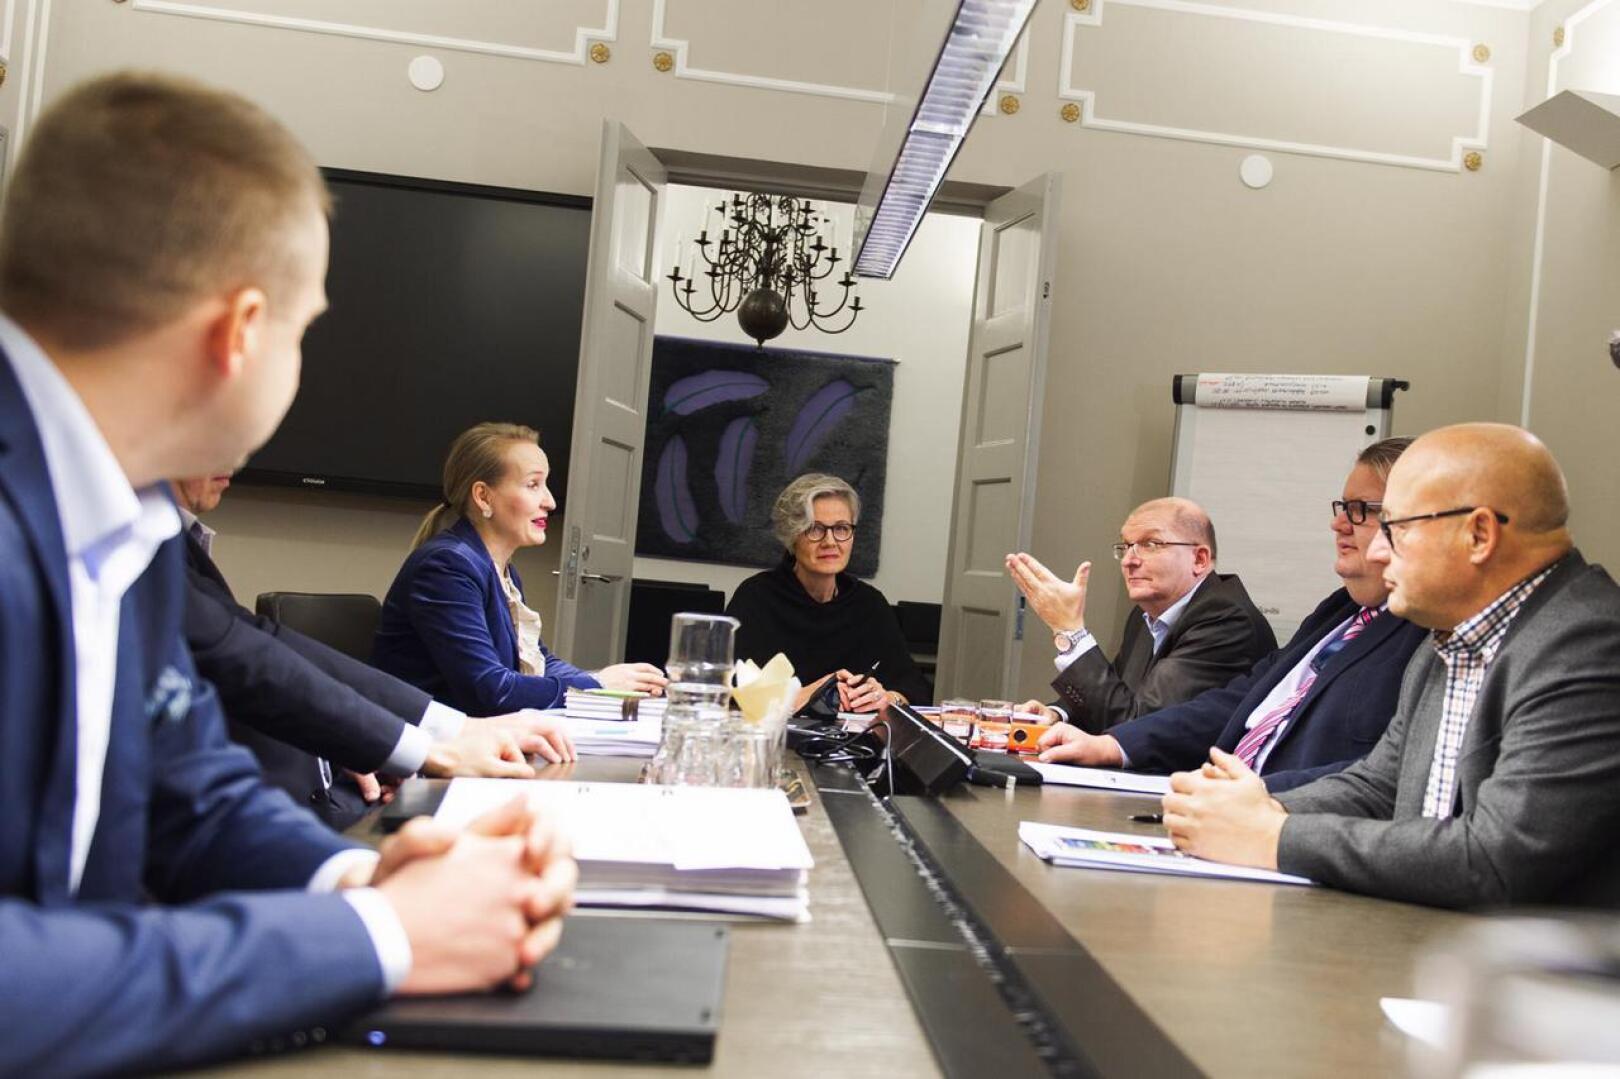 Teknologiateollisuuden työmarkkinajohtaja Minna Helteen (vasemmalla) edustamat työnantajat ja Teollisuusliiton puheenjohtaja Riku Aallon (keskellä oikealla) edustamat työntekijät eivät ole päässeet sopuun palkankorotusten koosta. Keskellä valtakunnansovittelija Vuokko Piekkala.